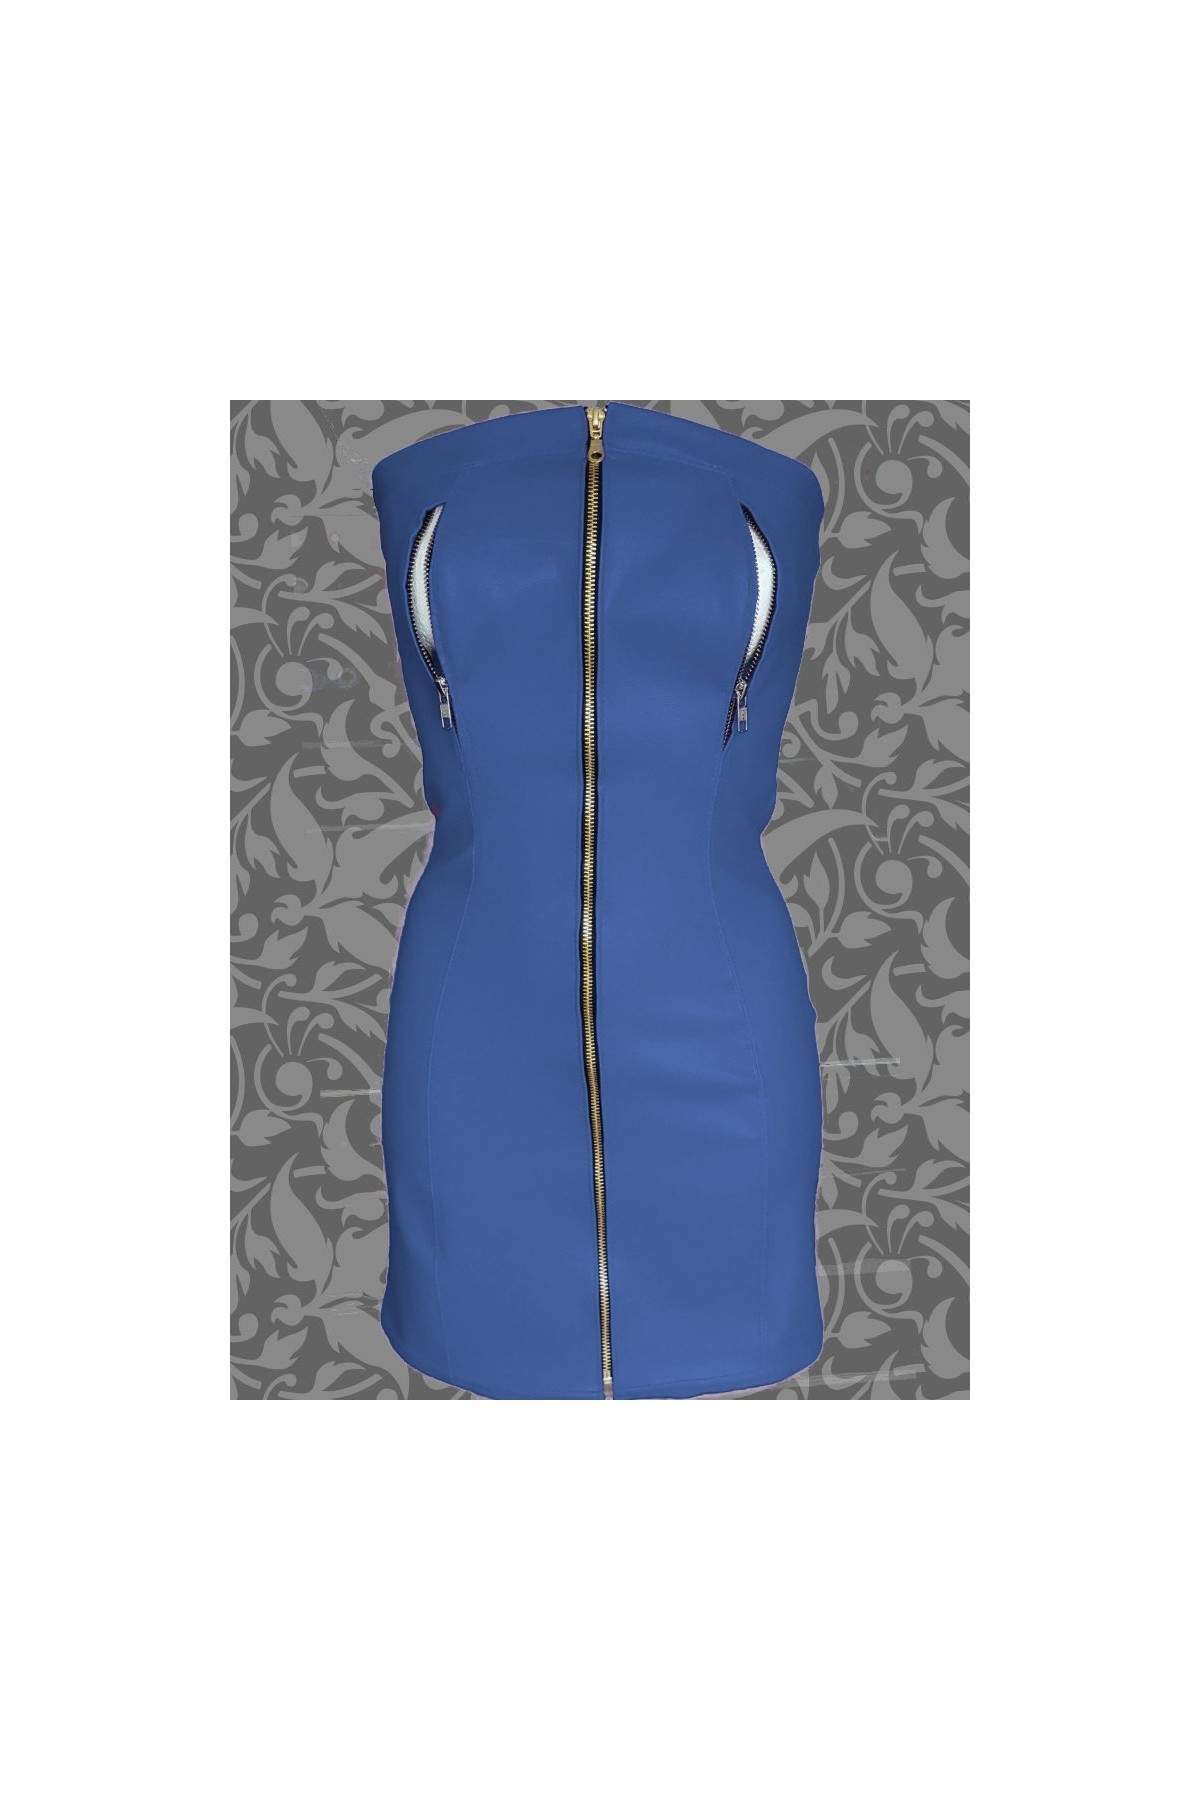 Nippelfrei Softleder Kleid blau mit Reißverschlüssen 39,00 € - 